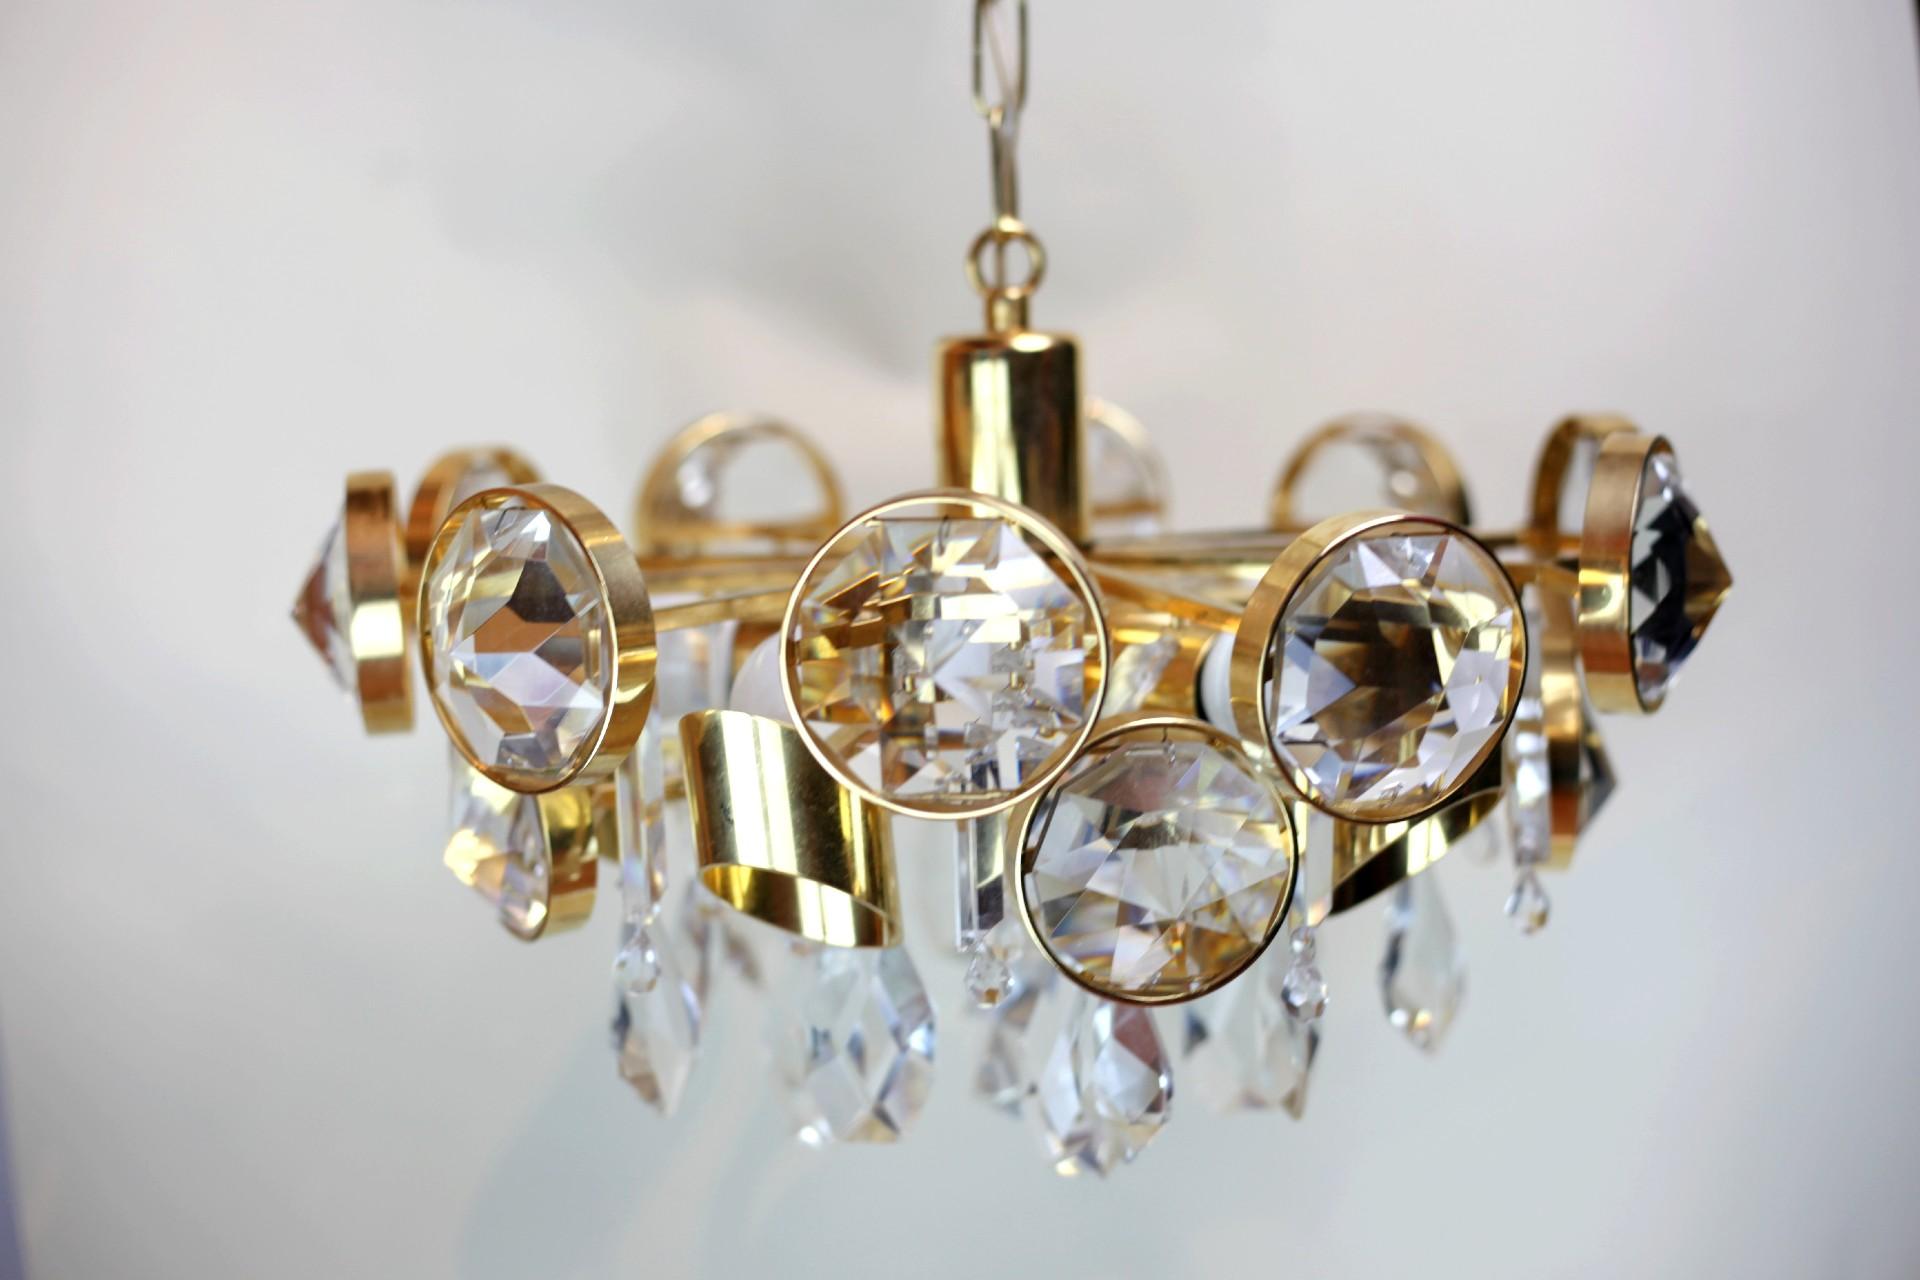 Hollywood Regency Ernest Palme 24K Gilded Crystal and Brass Chandelier For Sale